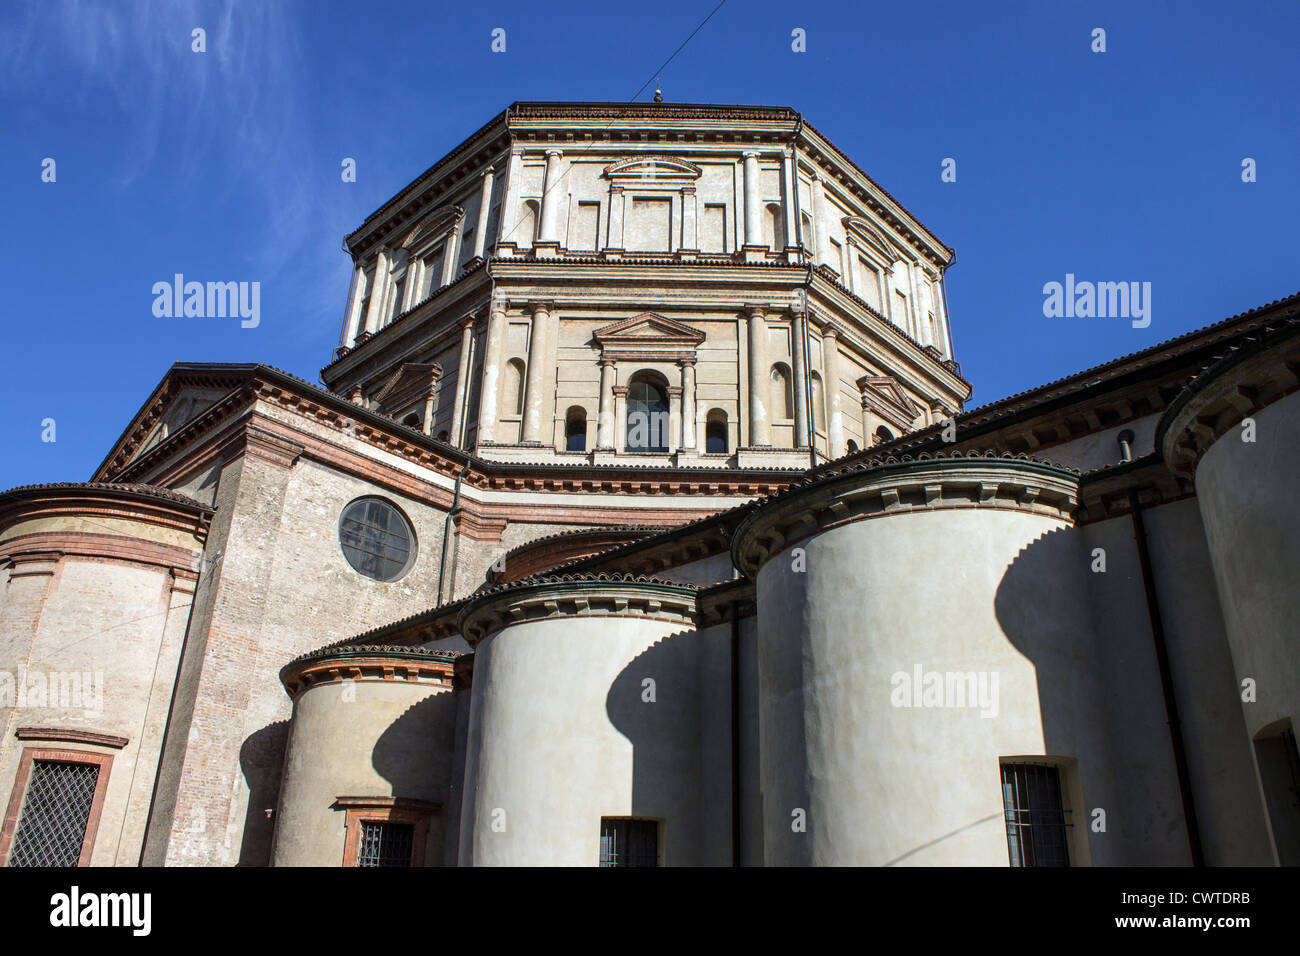 Italy, Lombardy, Milan, Santa Maria della Passione church Stock Photo